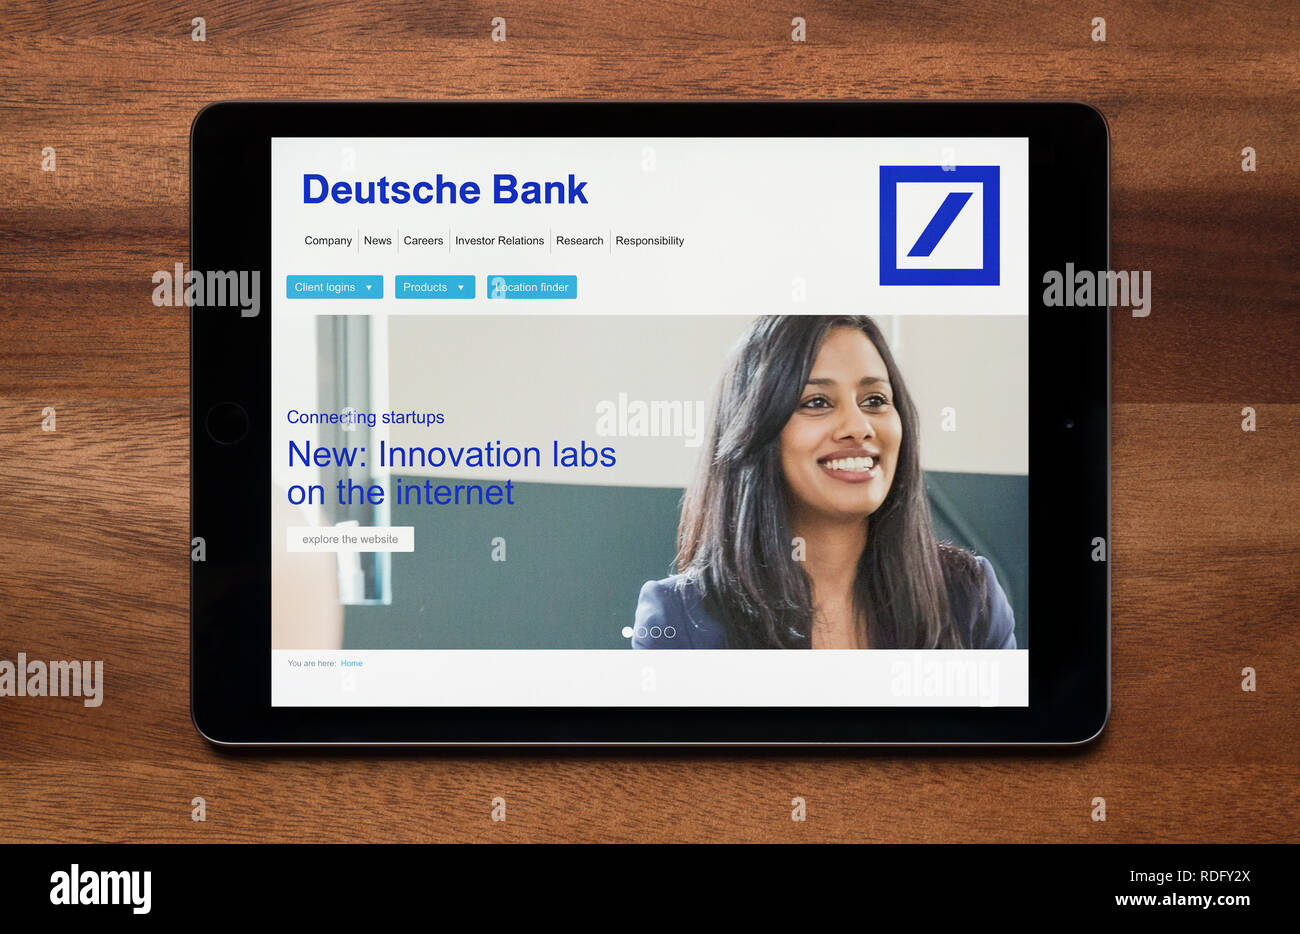 El sitio web de Deutsche Bank es visto en un iPad, que descansa sobre una mesa de madera (uso Editorial solamente). Foto de stock